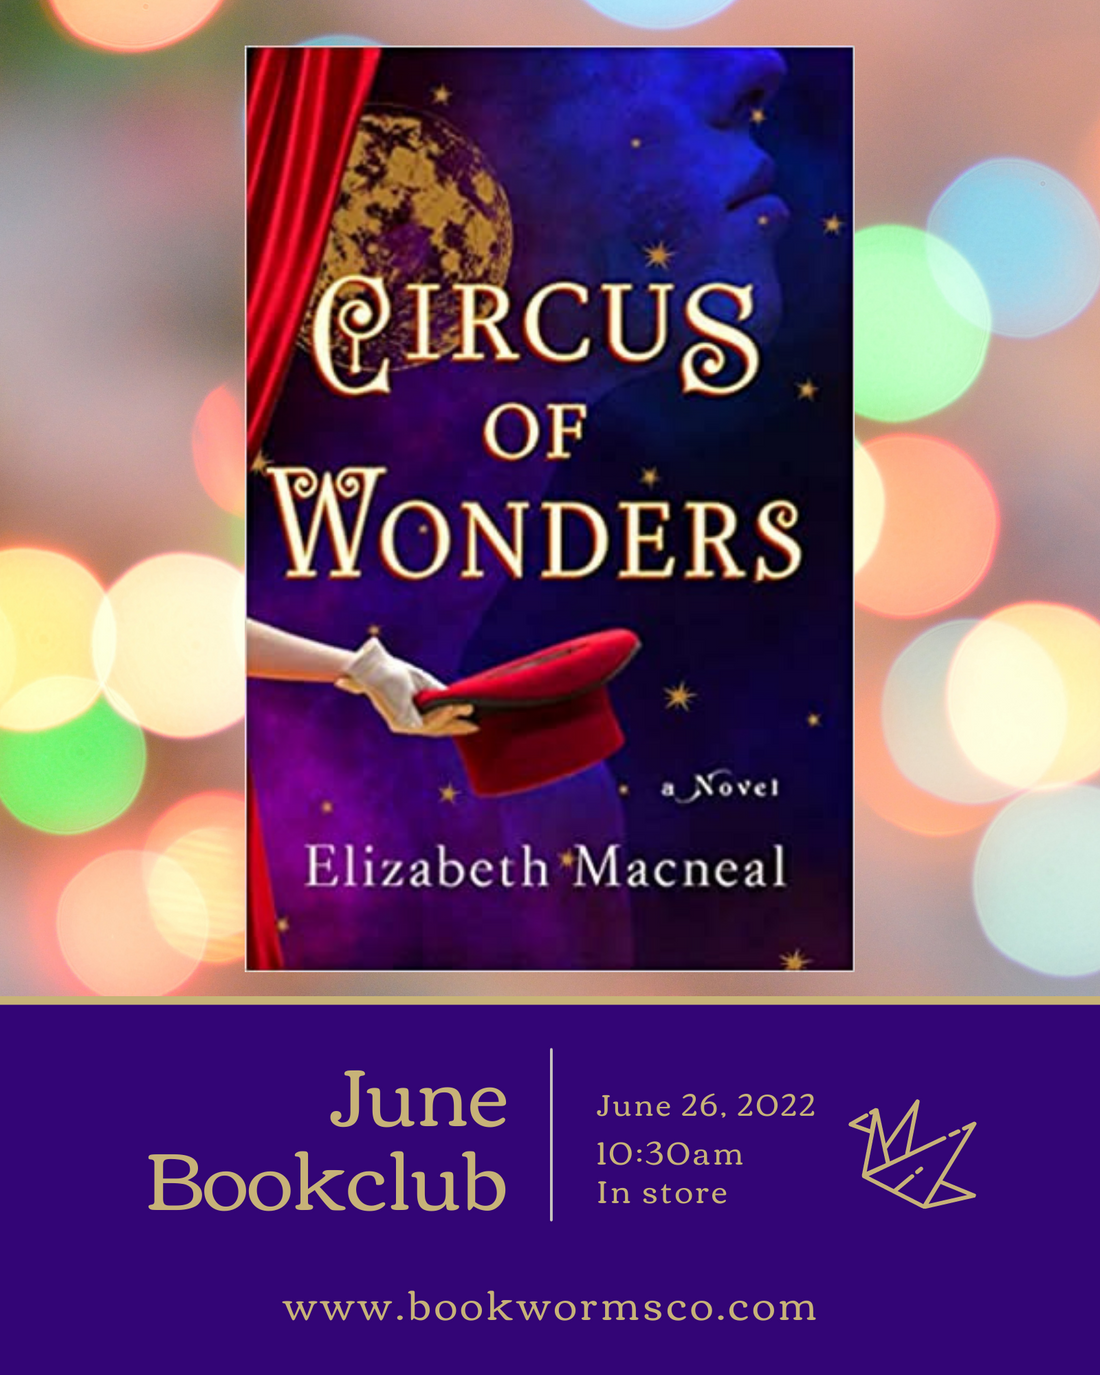 June Bookclub: Circus of Wonders